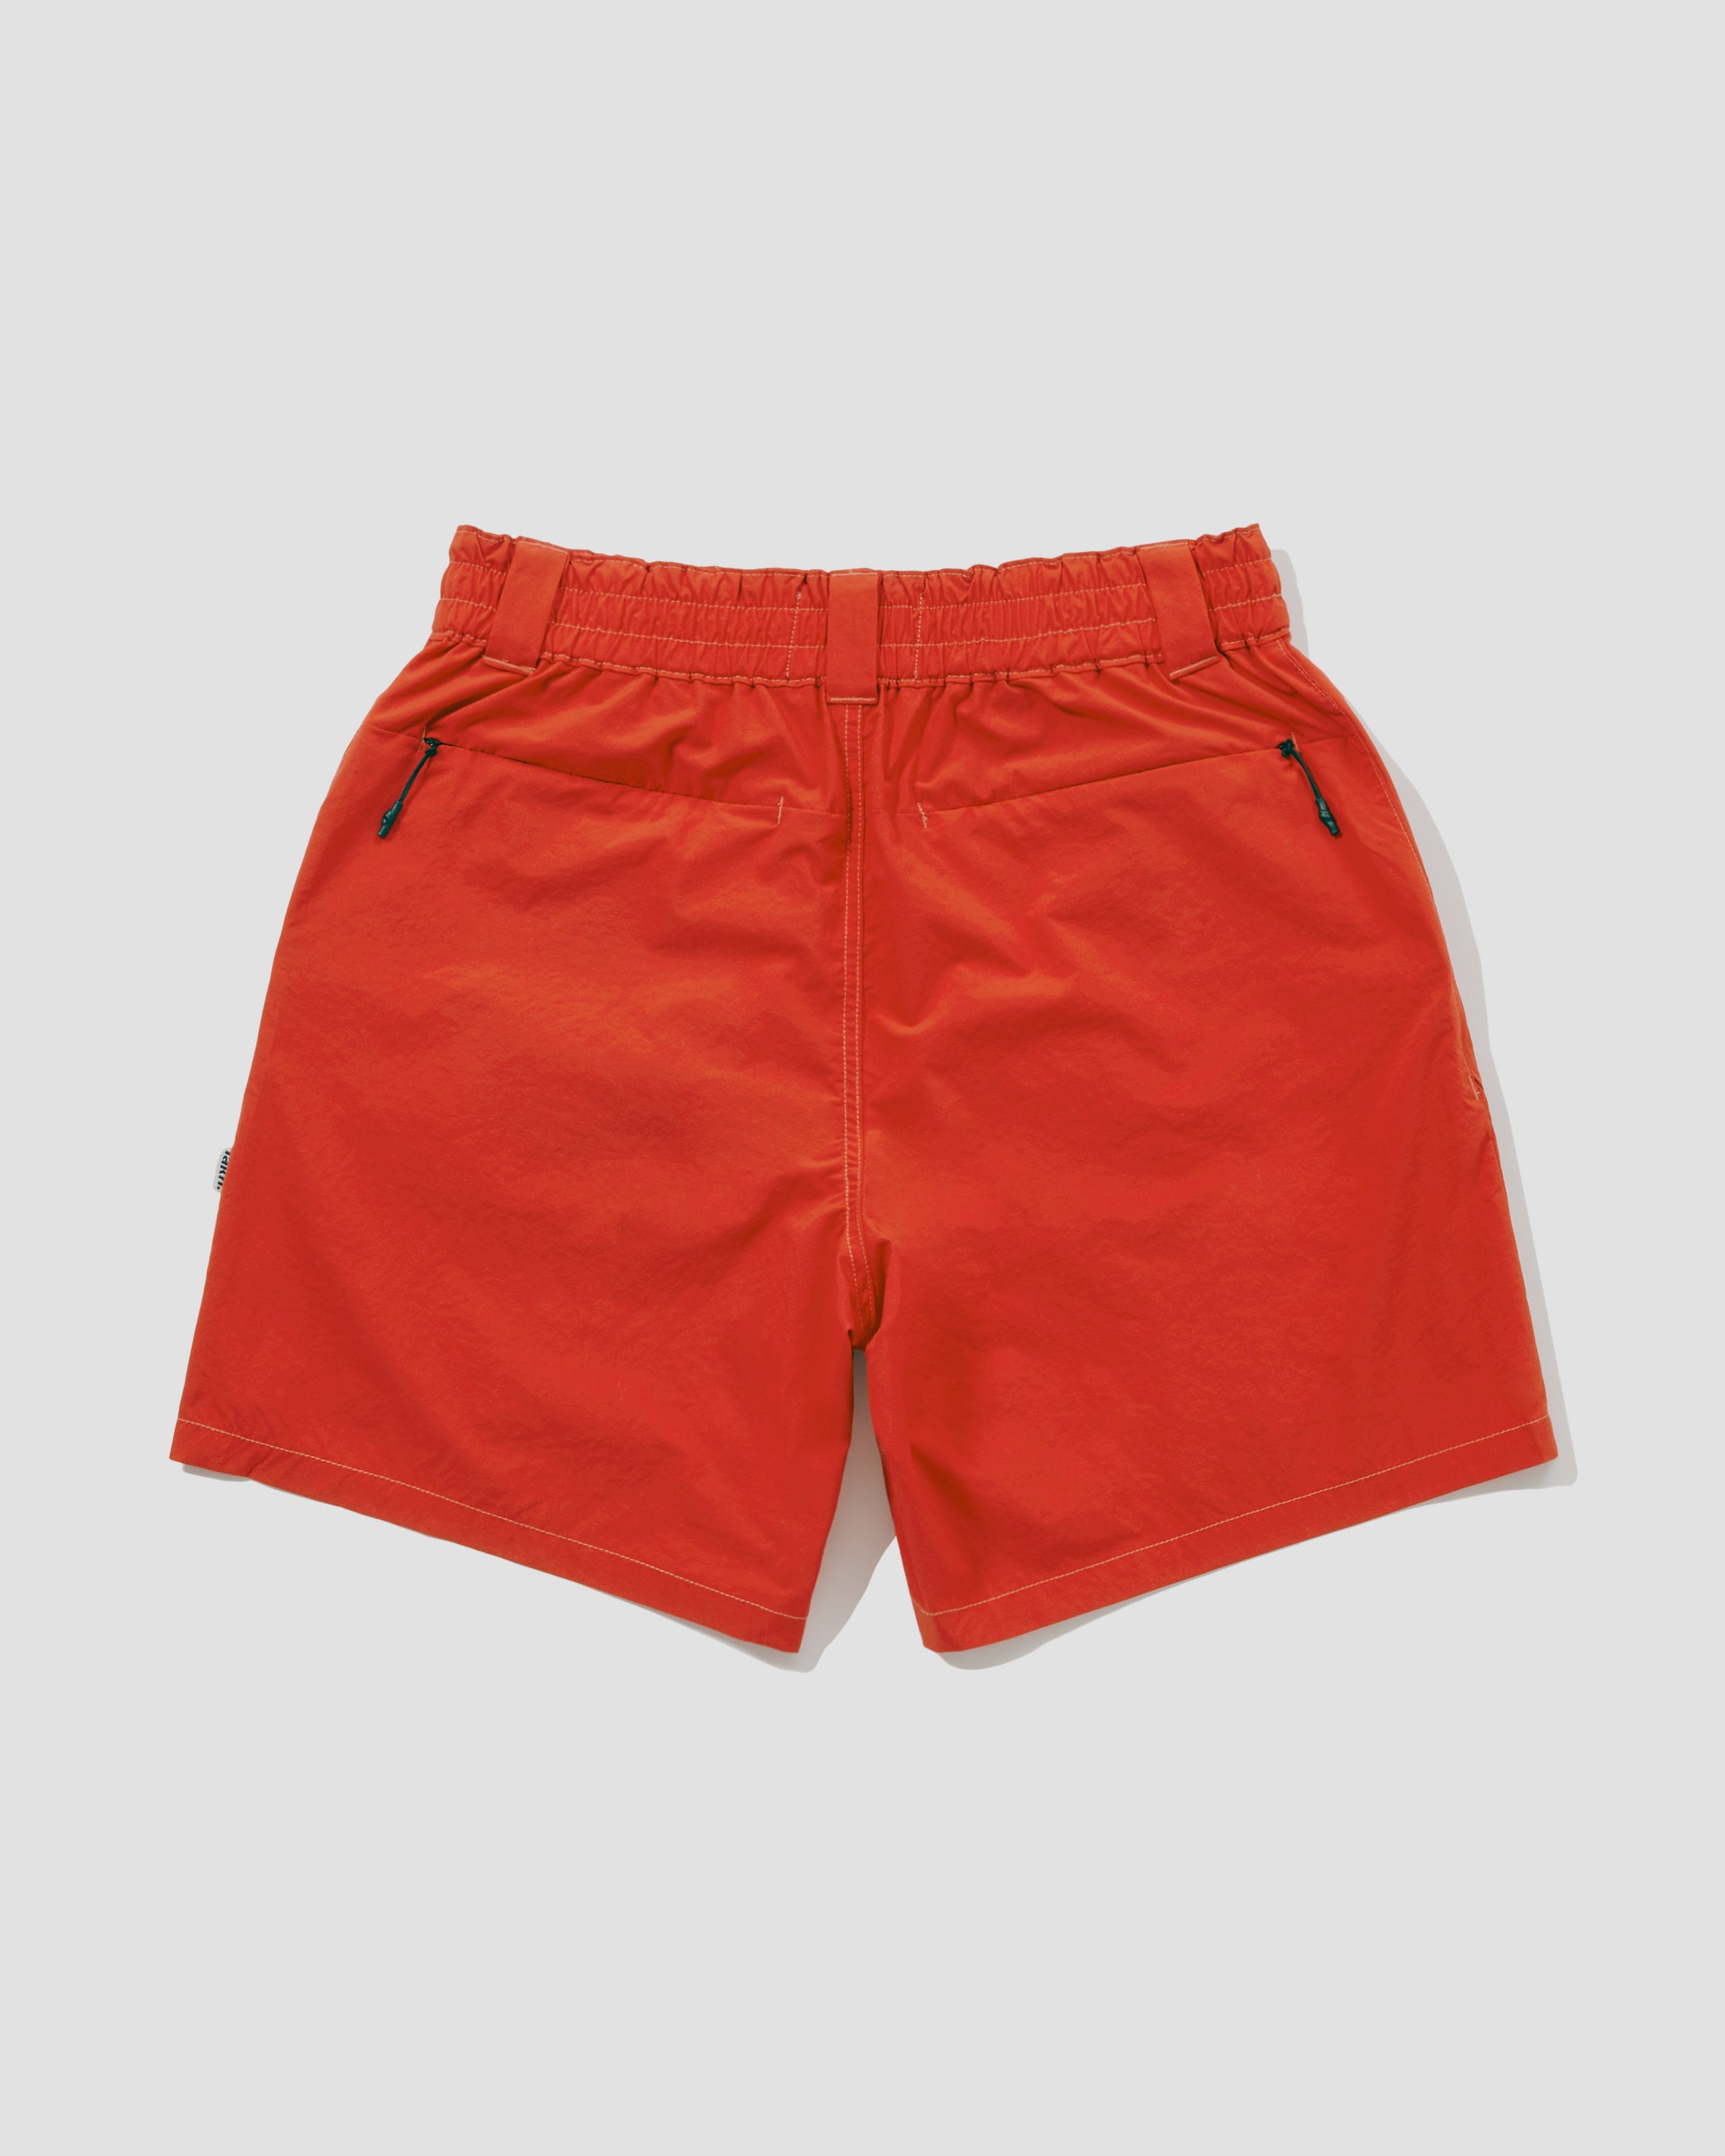 Gadget Shorts - Orange